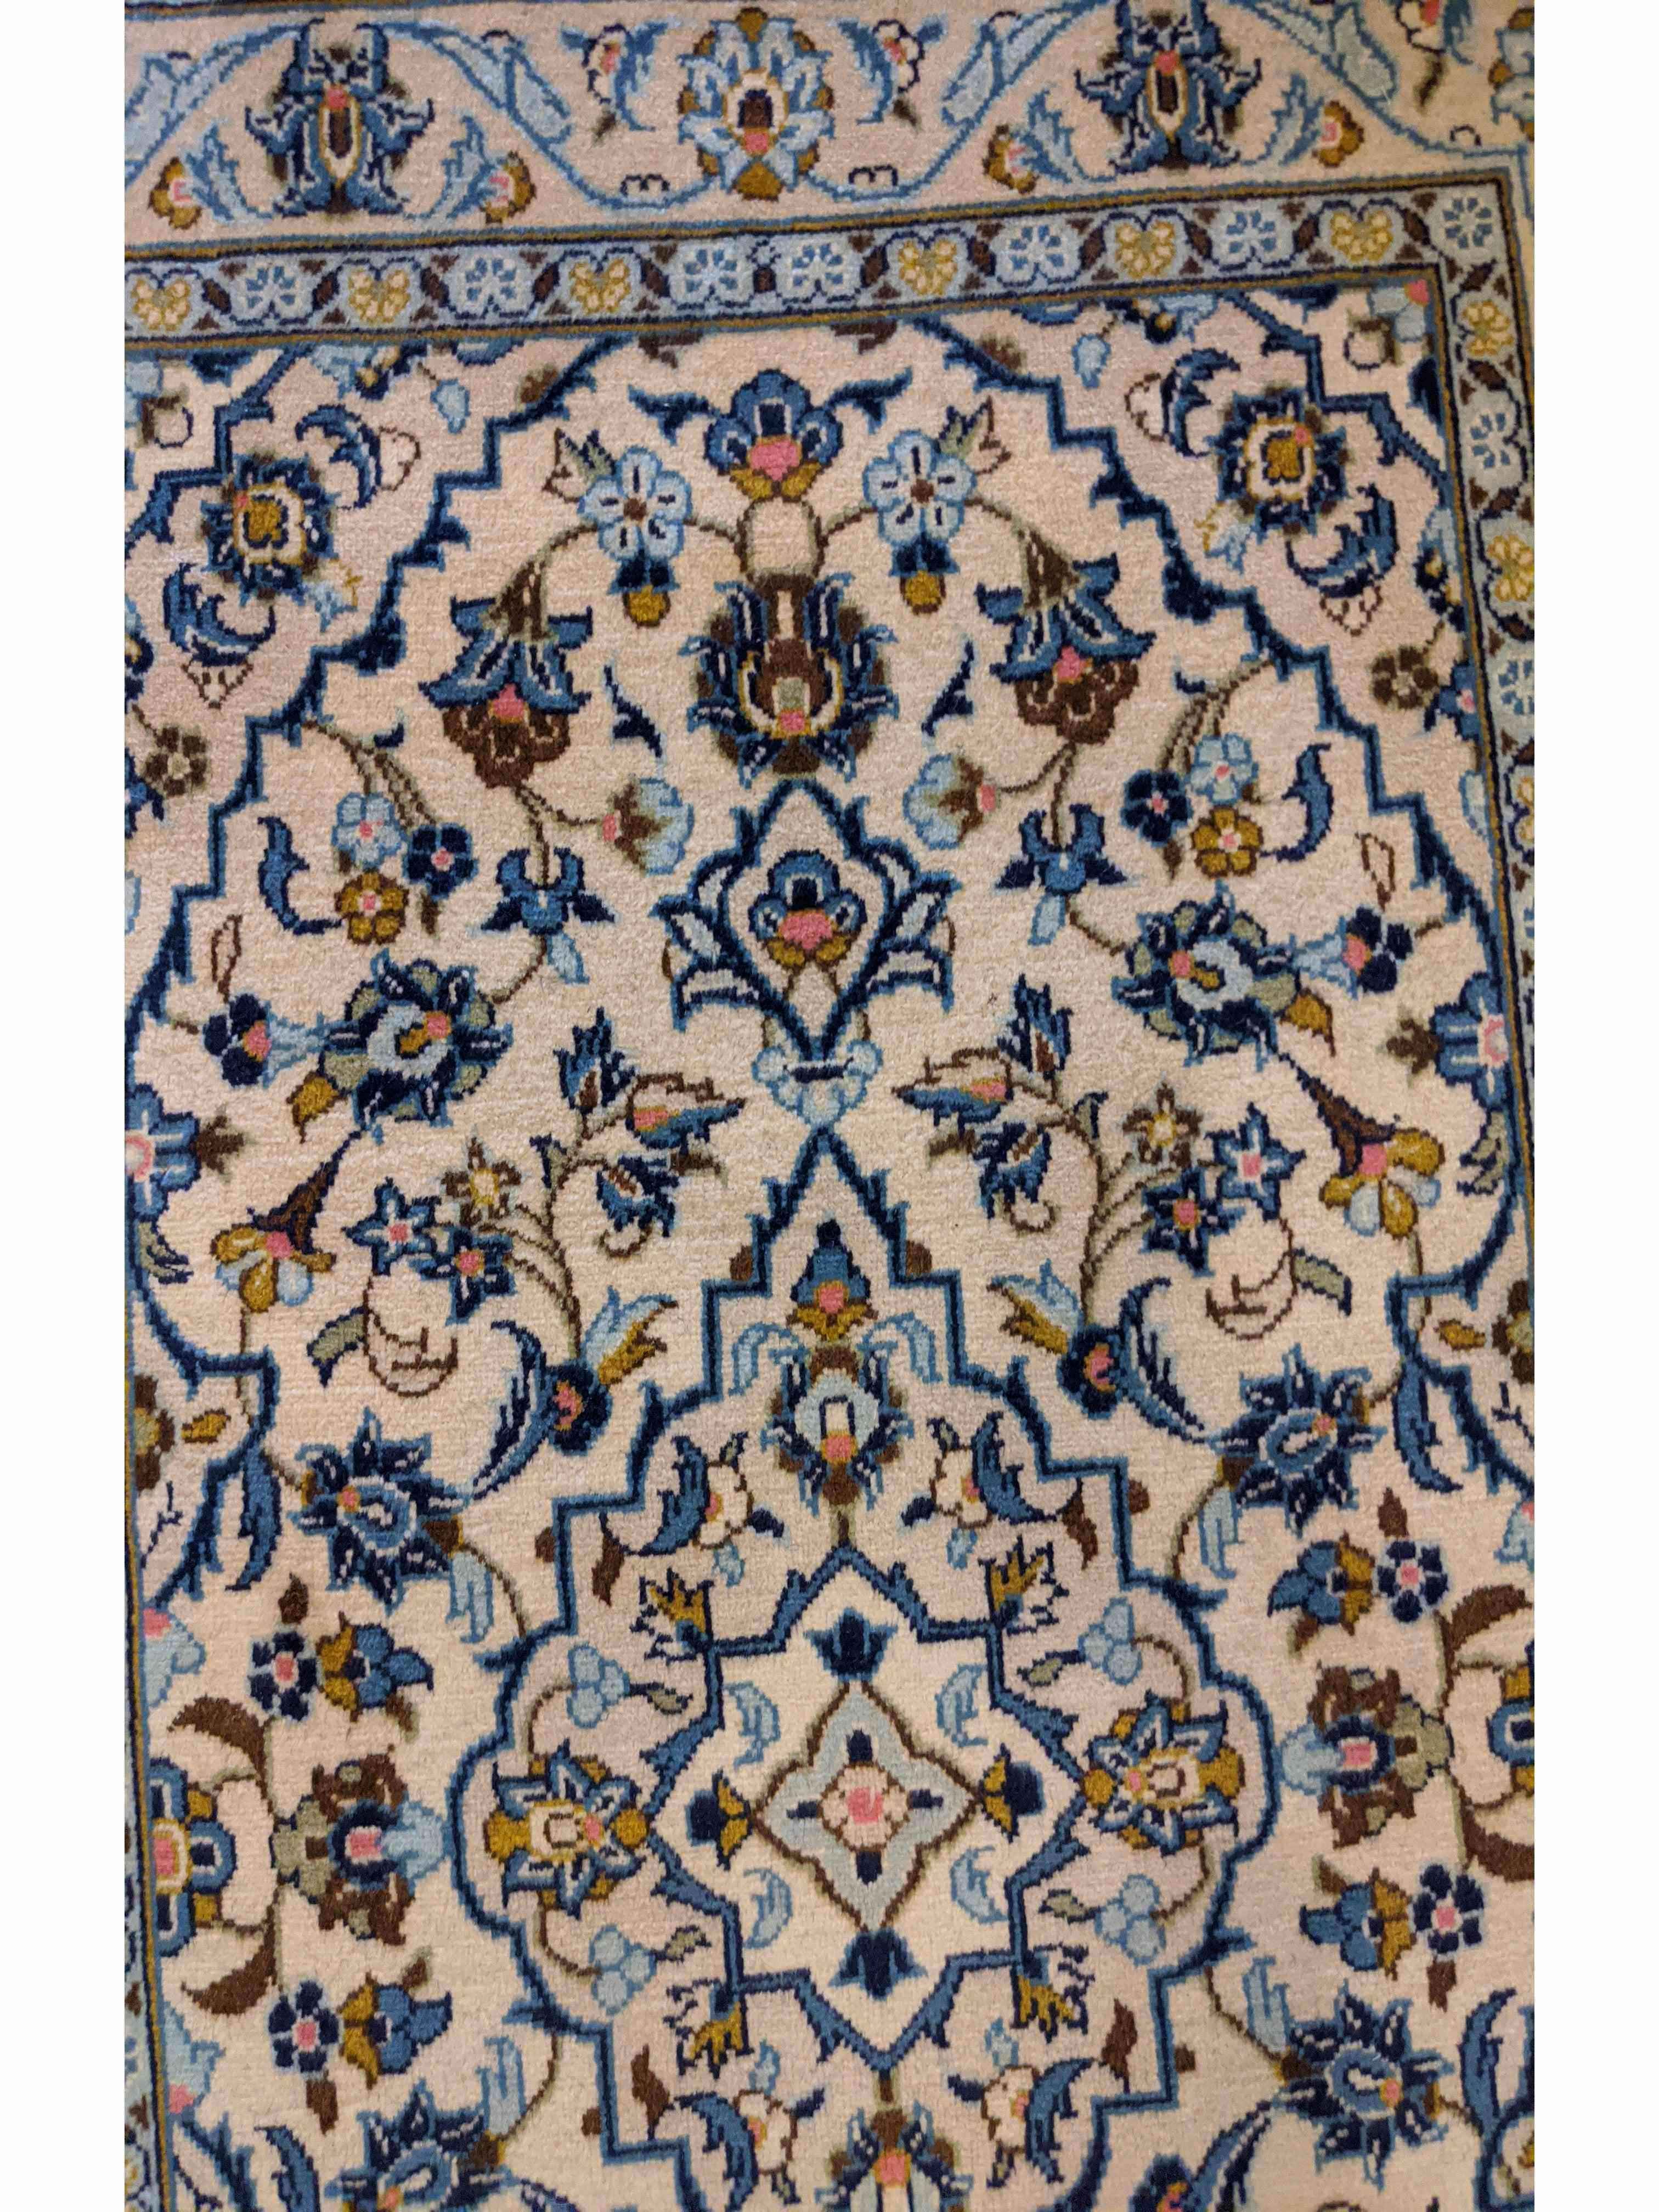 150 x 101 cm Kashan Traditional Blue Rug - Rugmaster